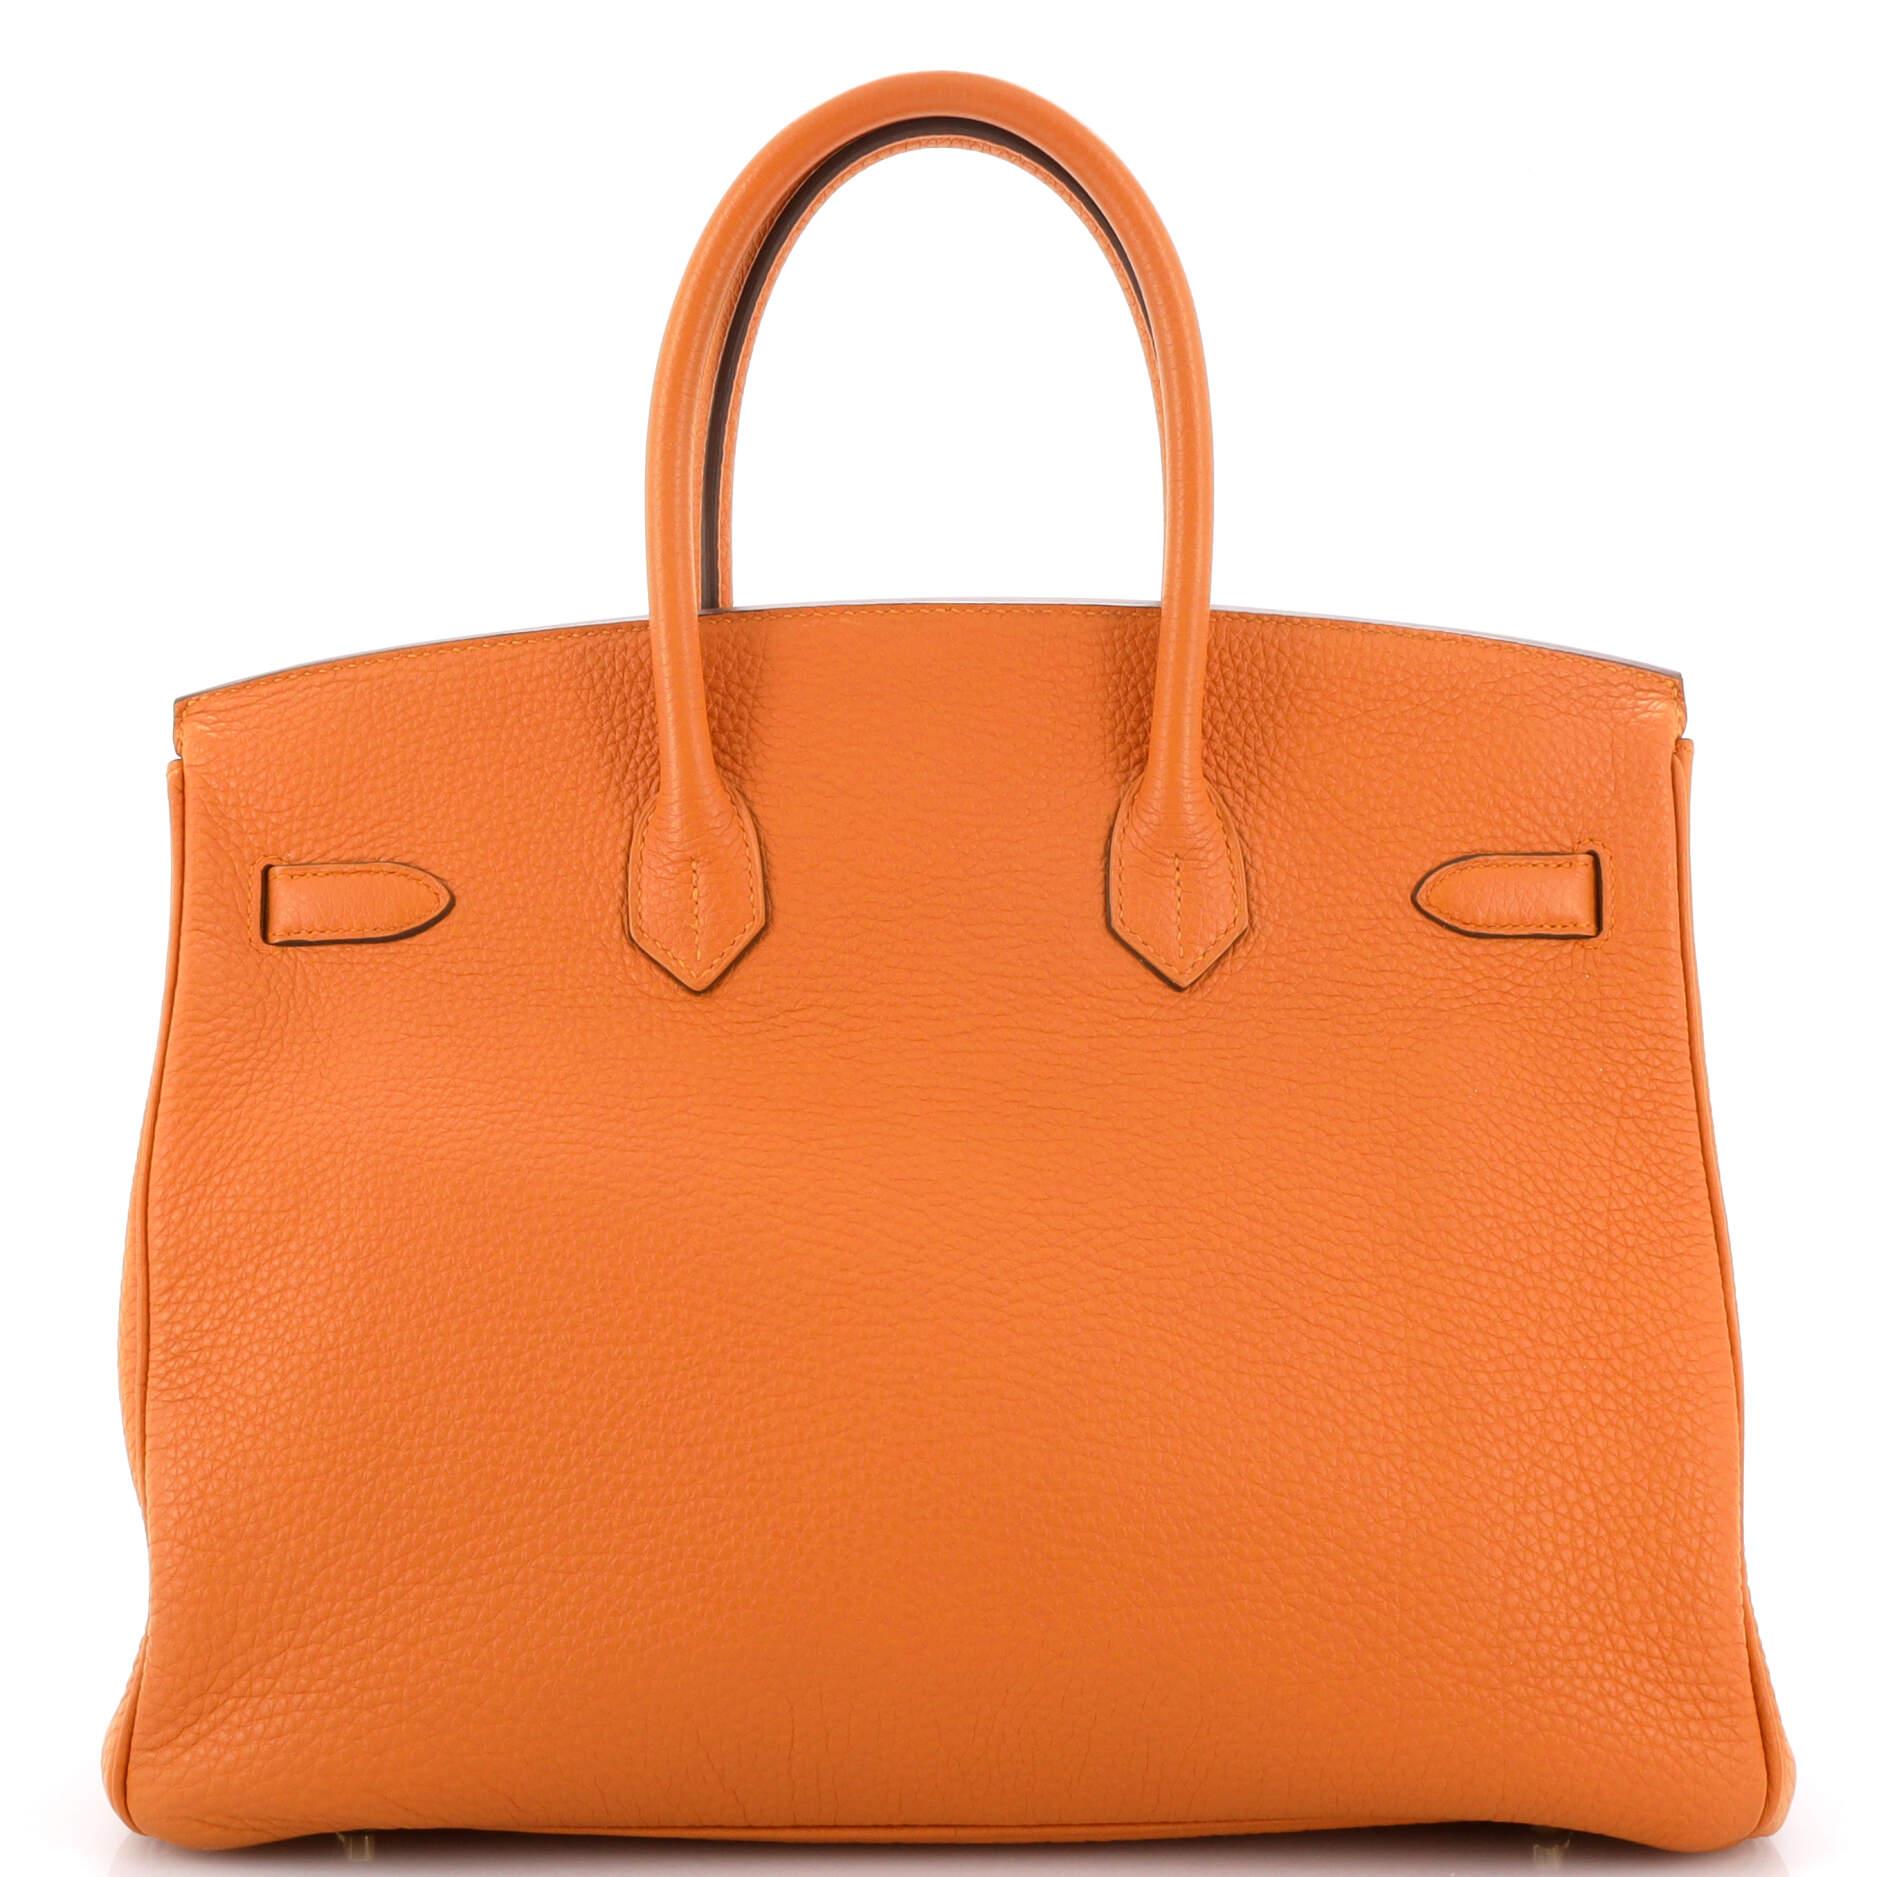  Hermès Sac à main Birkin orange H Togo avec finitions métalliques dorées 35 Pour femmes 